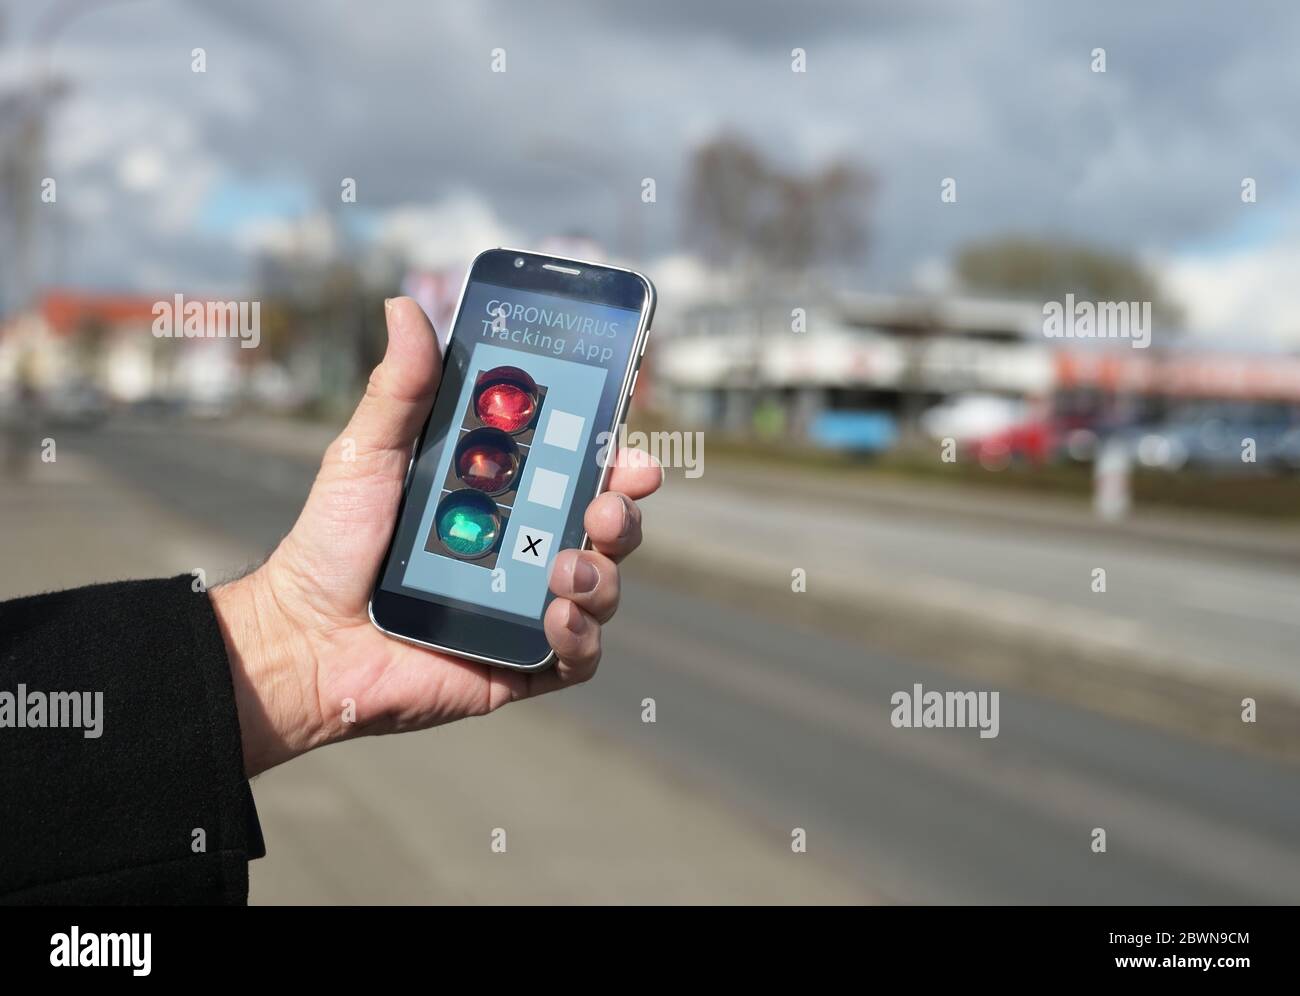 Ältere männliche Hand hält ein Smartphone mit einem Coronavirus Tracking-App, die Kontakte zwischen Menschen überwacht und zeigt das Risiko einer Infektion, blurr Stockfoto